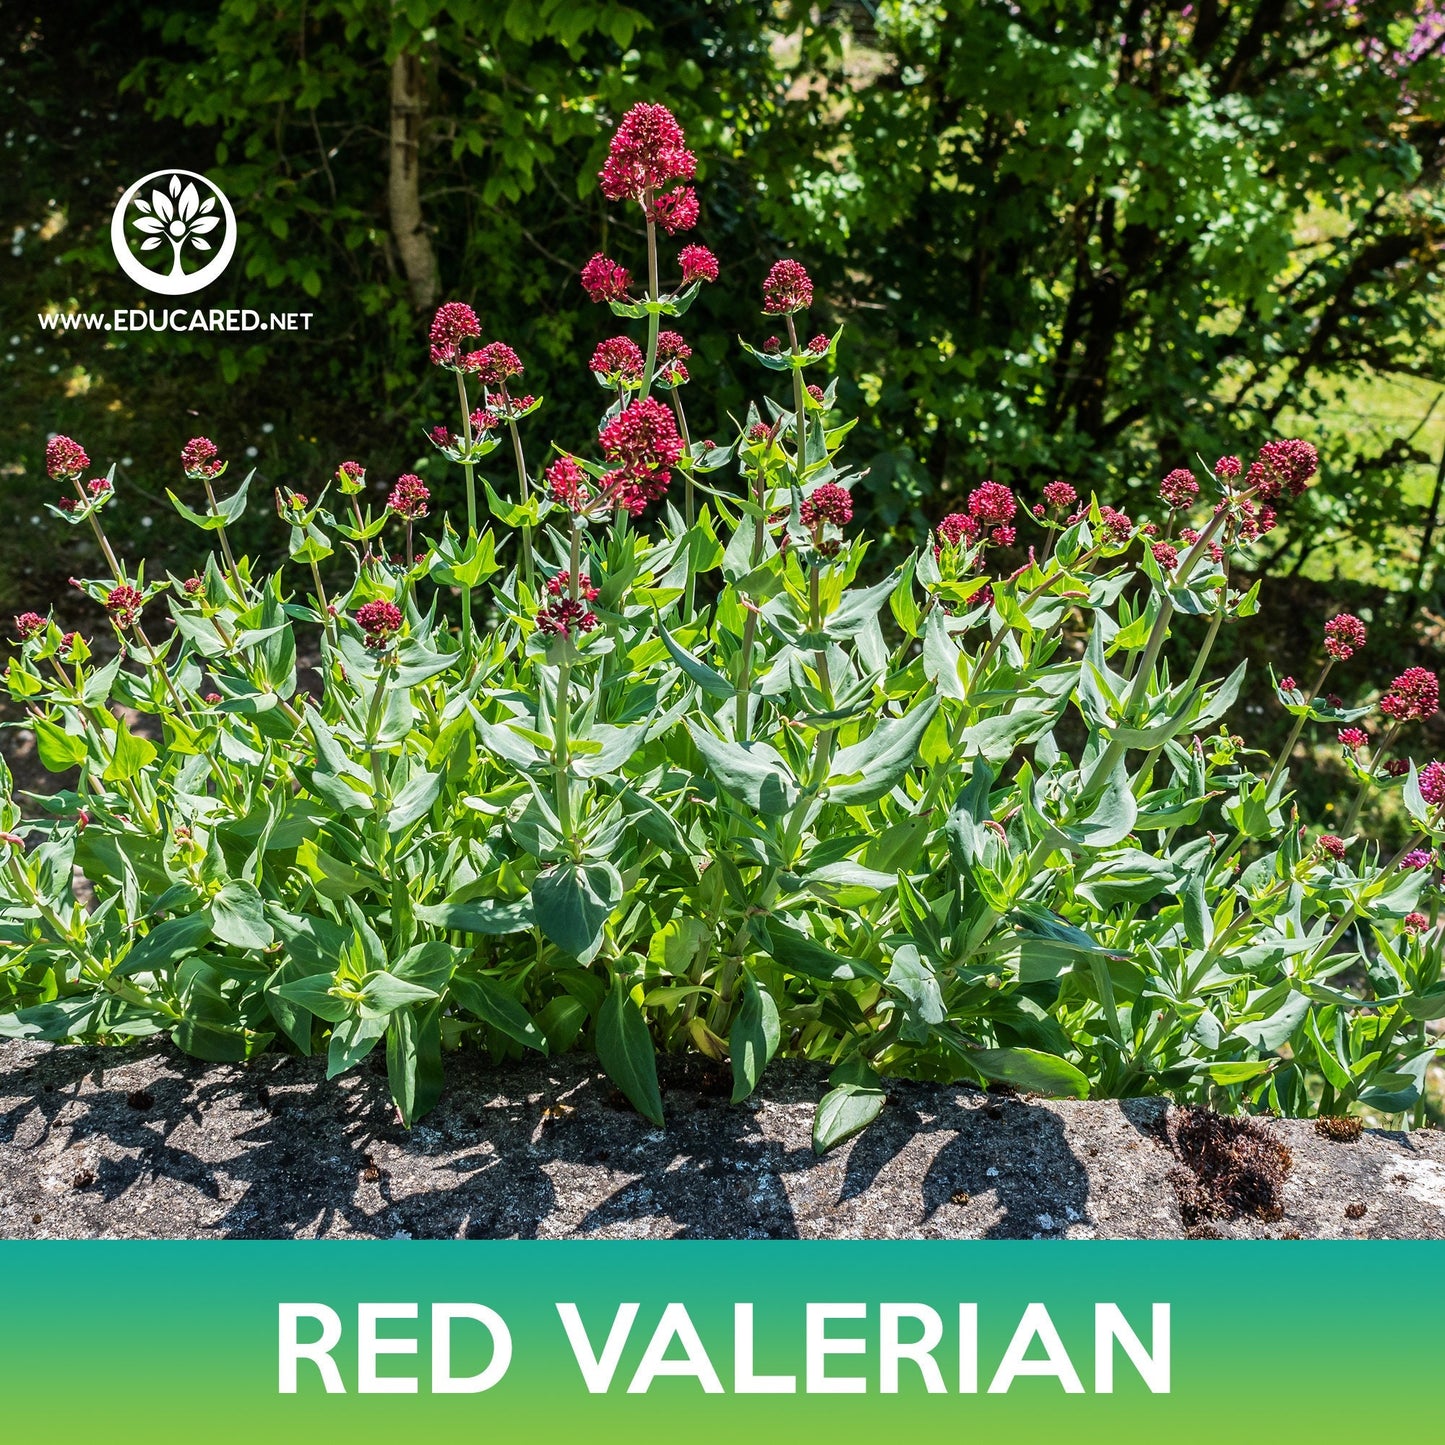 Red Valerian Flower Seeds, Jupiter's Beard, Centranthus ruber